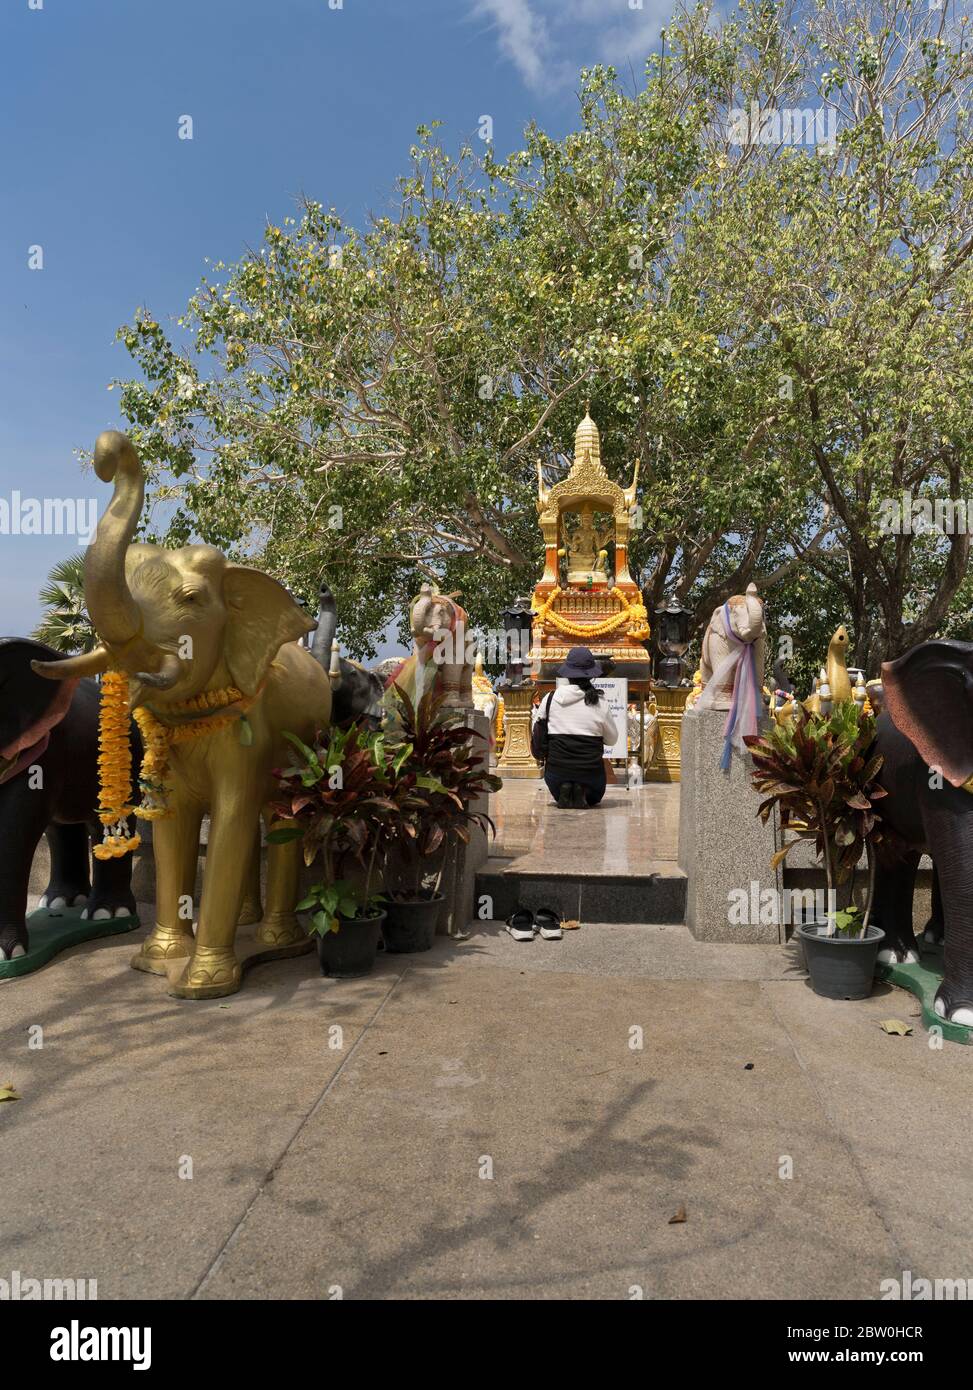 dh Promthep Capo Phra Prom Area PHUKET THAILANDIA statue di elefanti Tailandese donna che prega al Brahma indù santuario induista persona Foto Stock